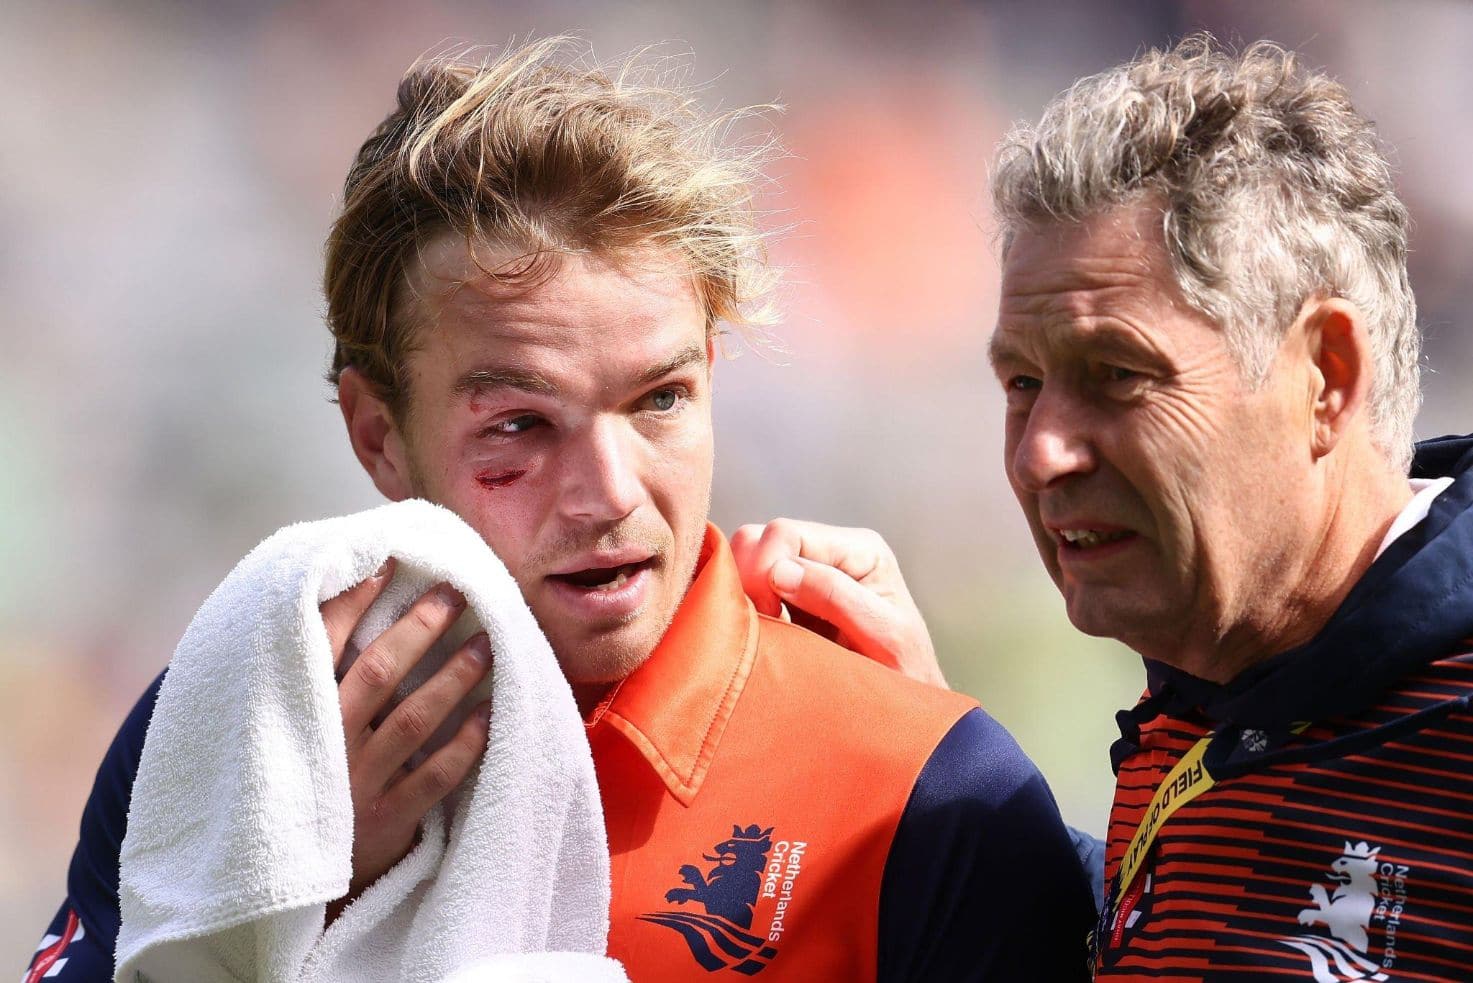 T20 World Cup: Netherlands batter taken to hospital